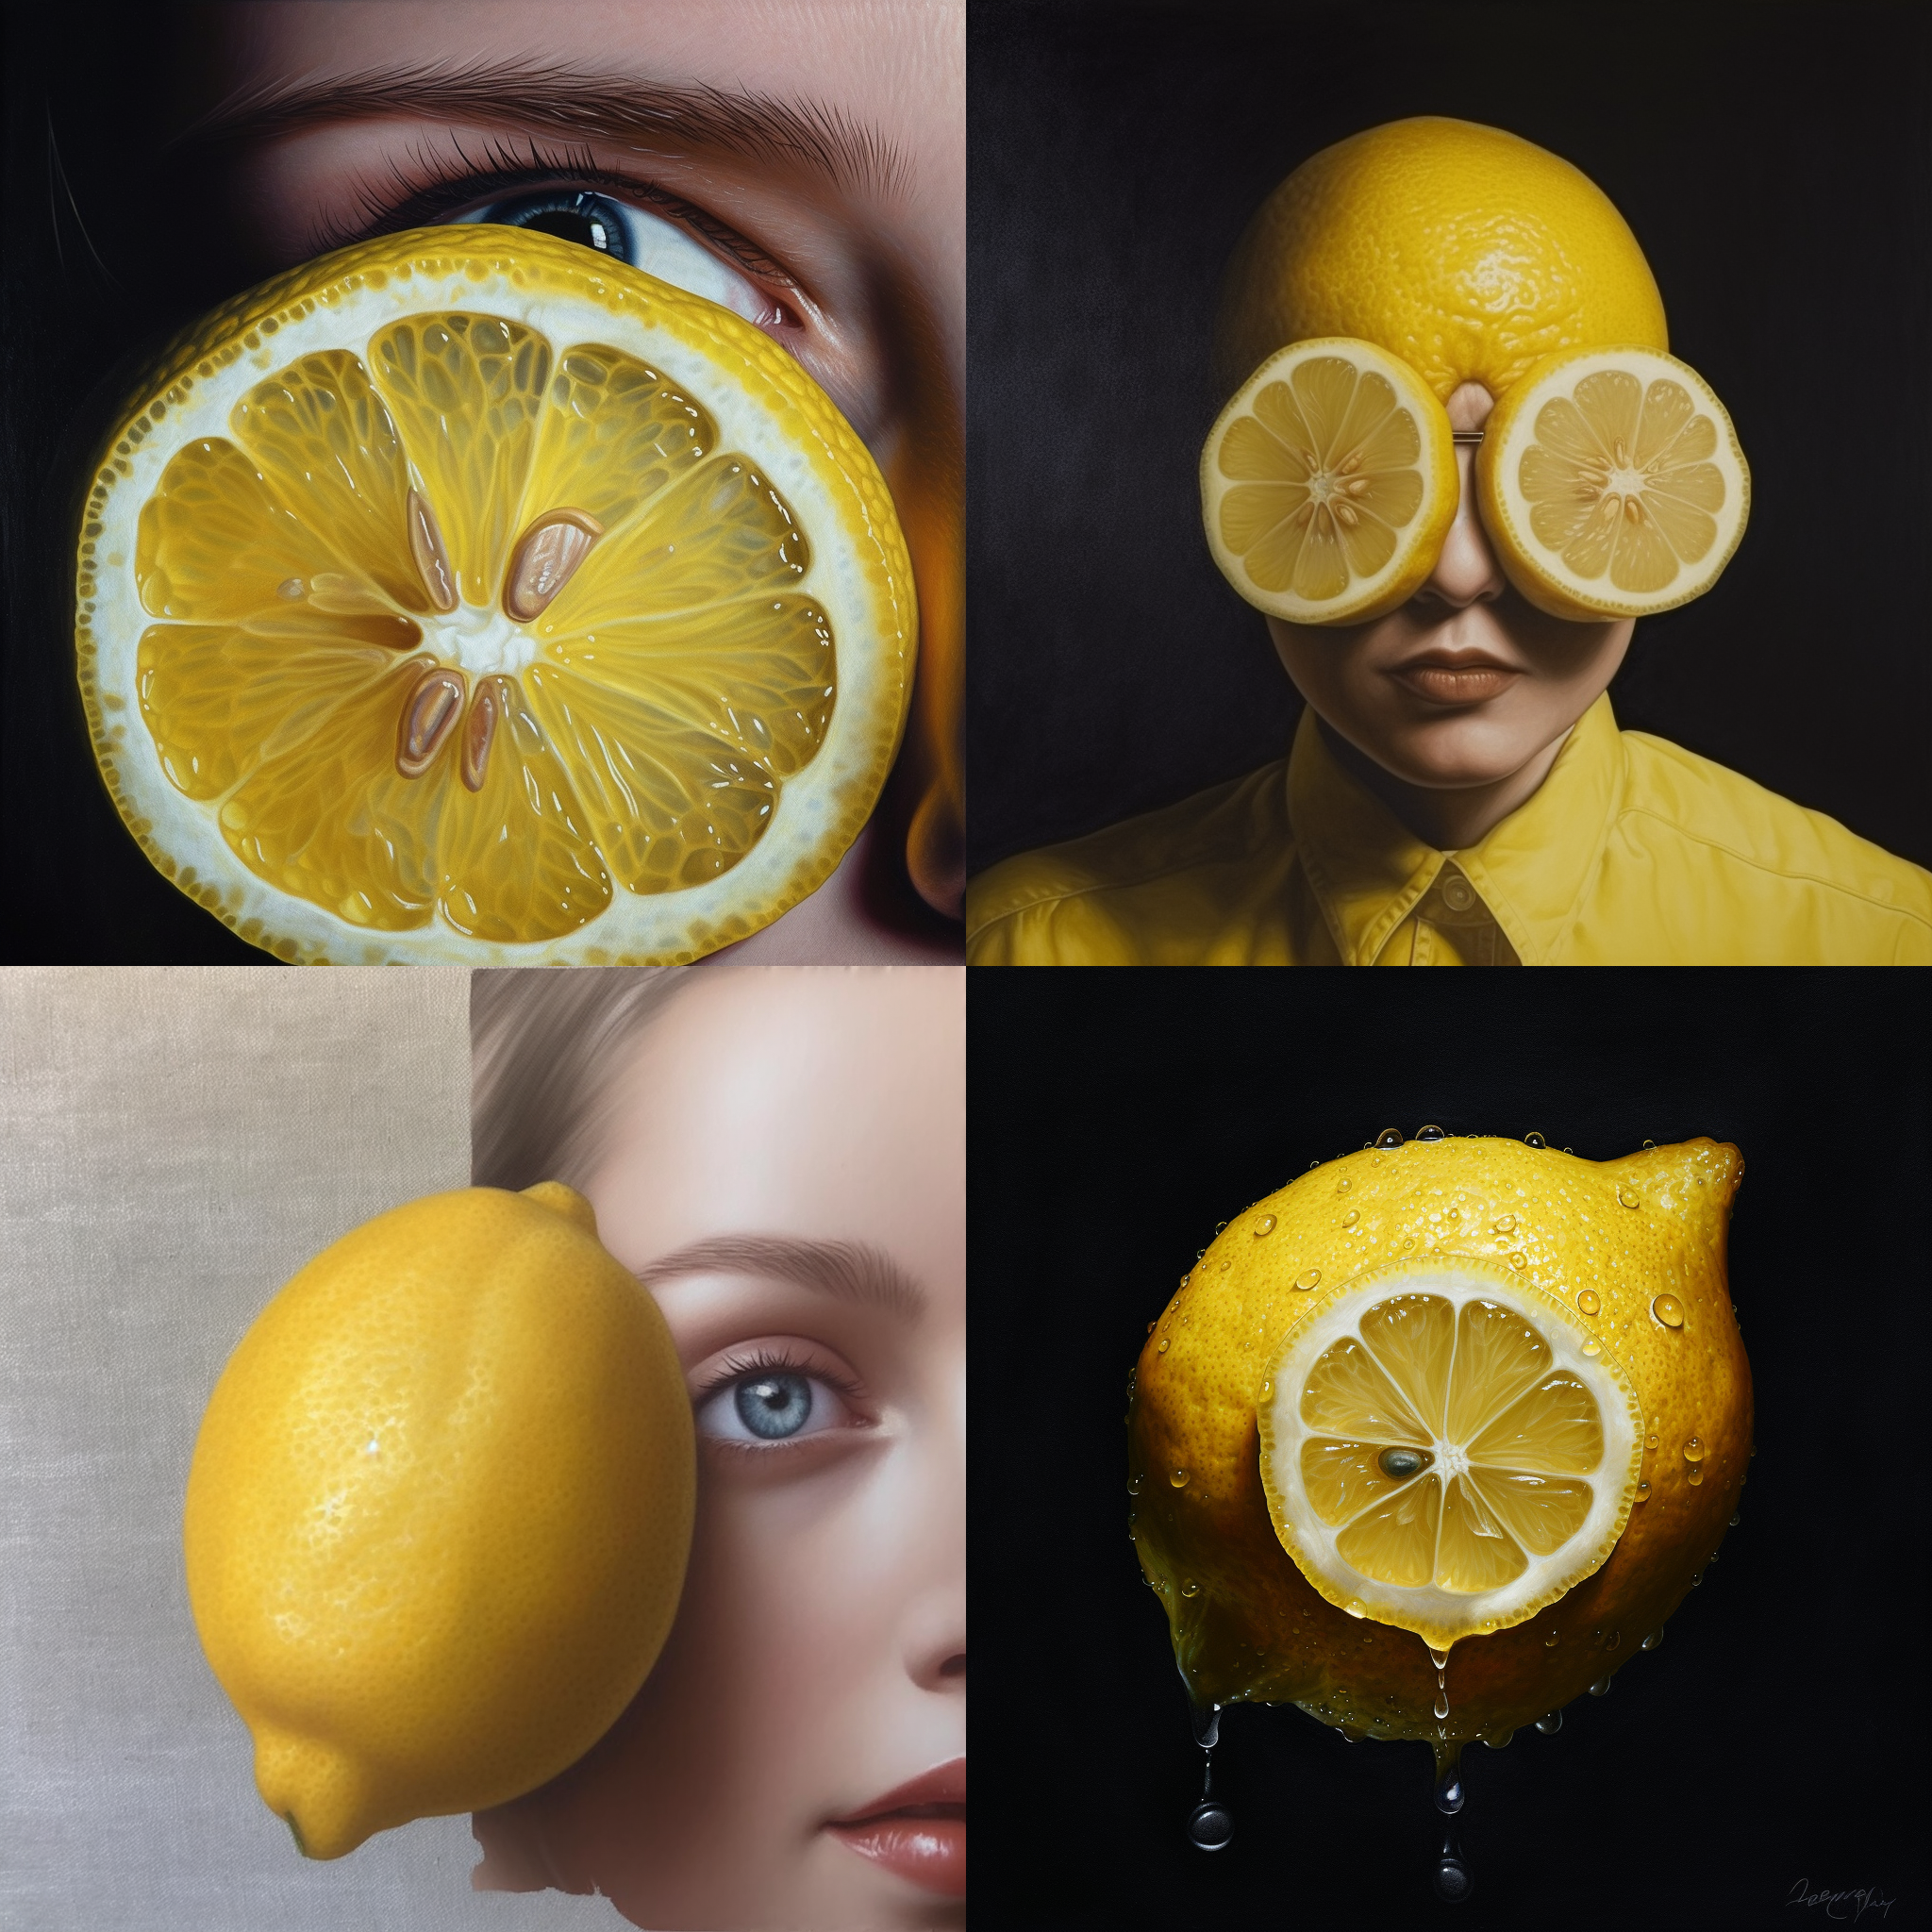 fernando172543 a lemon portrait photorealism baae8a55 1d70 4b49 b5ed 0fc4b0ae7130